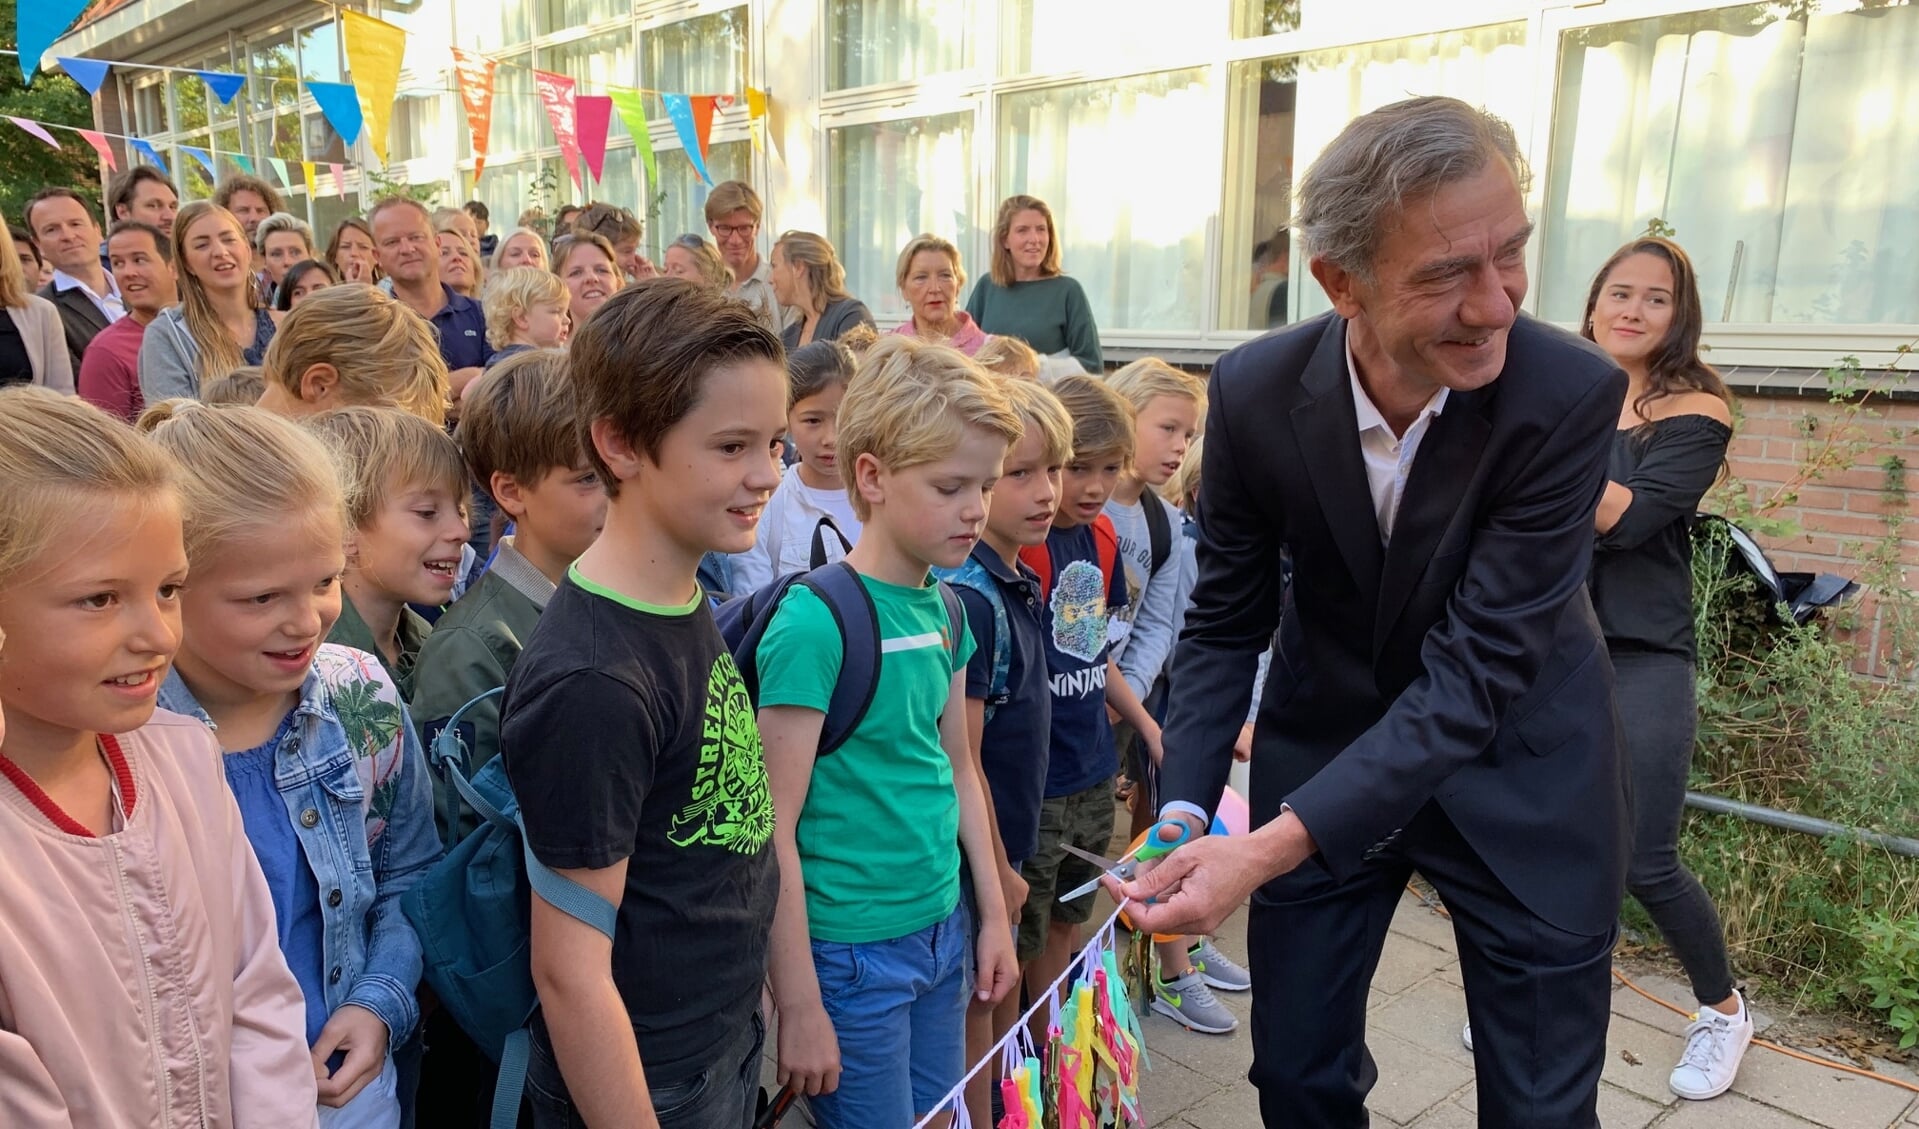 De nieuwe, tijdelijke schoollokalen werden door wethouder Matthijs Huizing feestelijk geopend. 